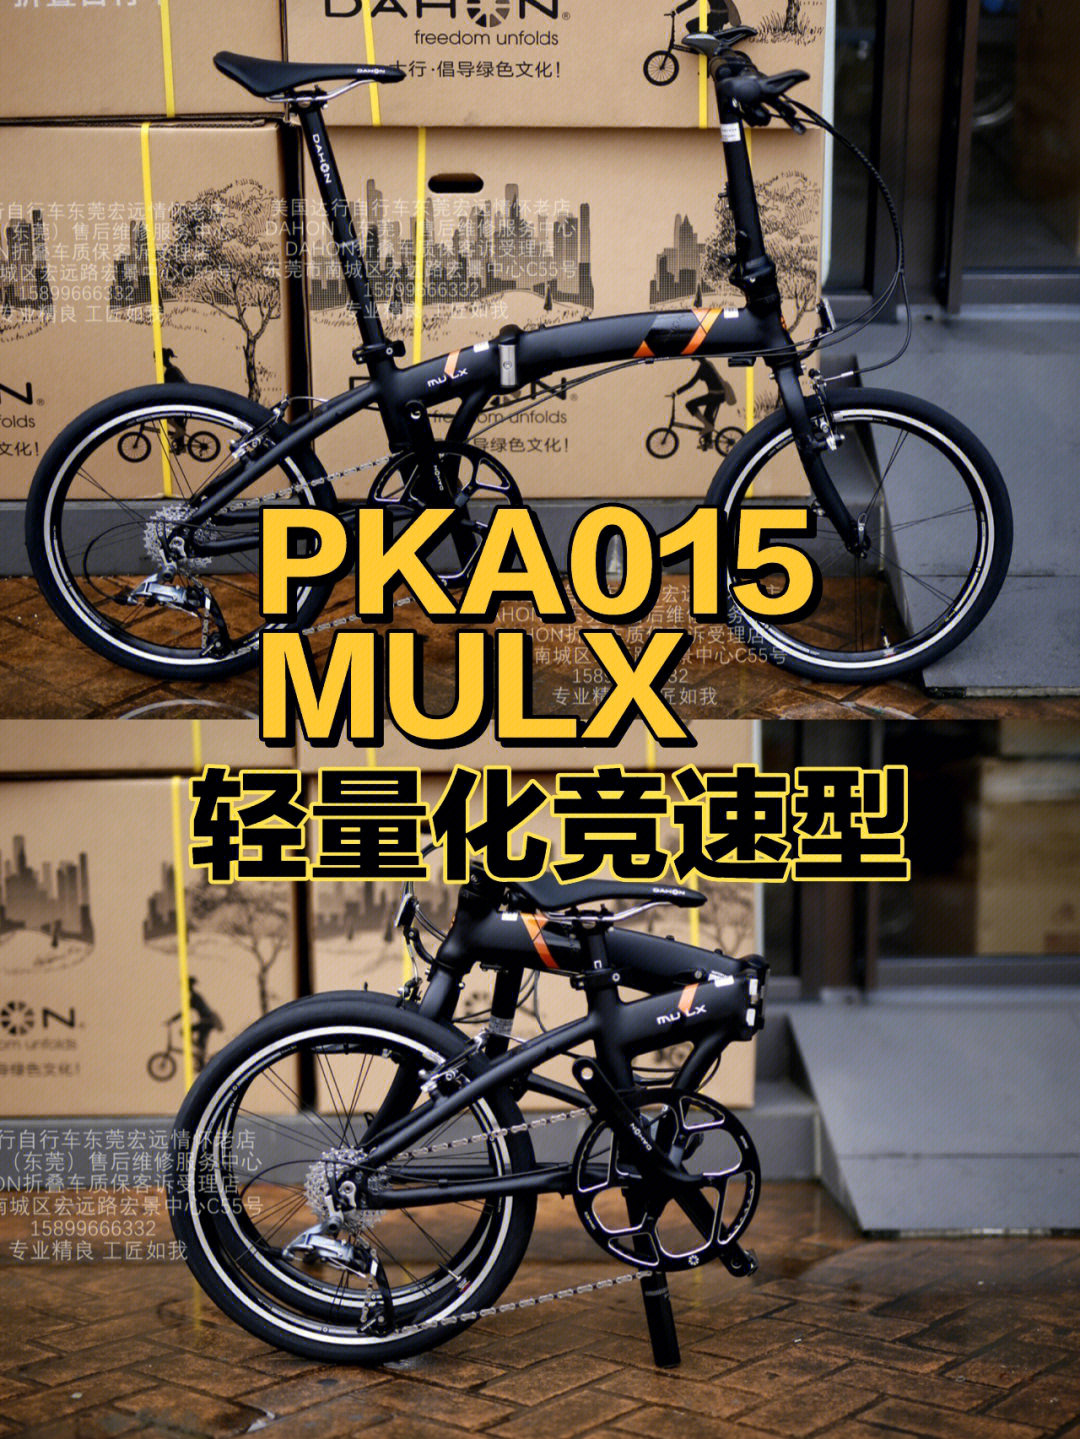 dahonpka015mulx轻快型折叠自行车